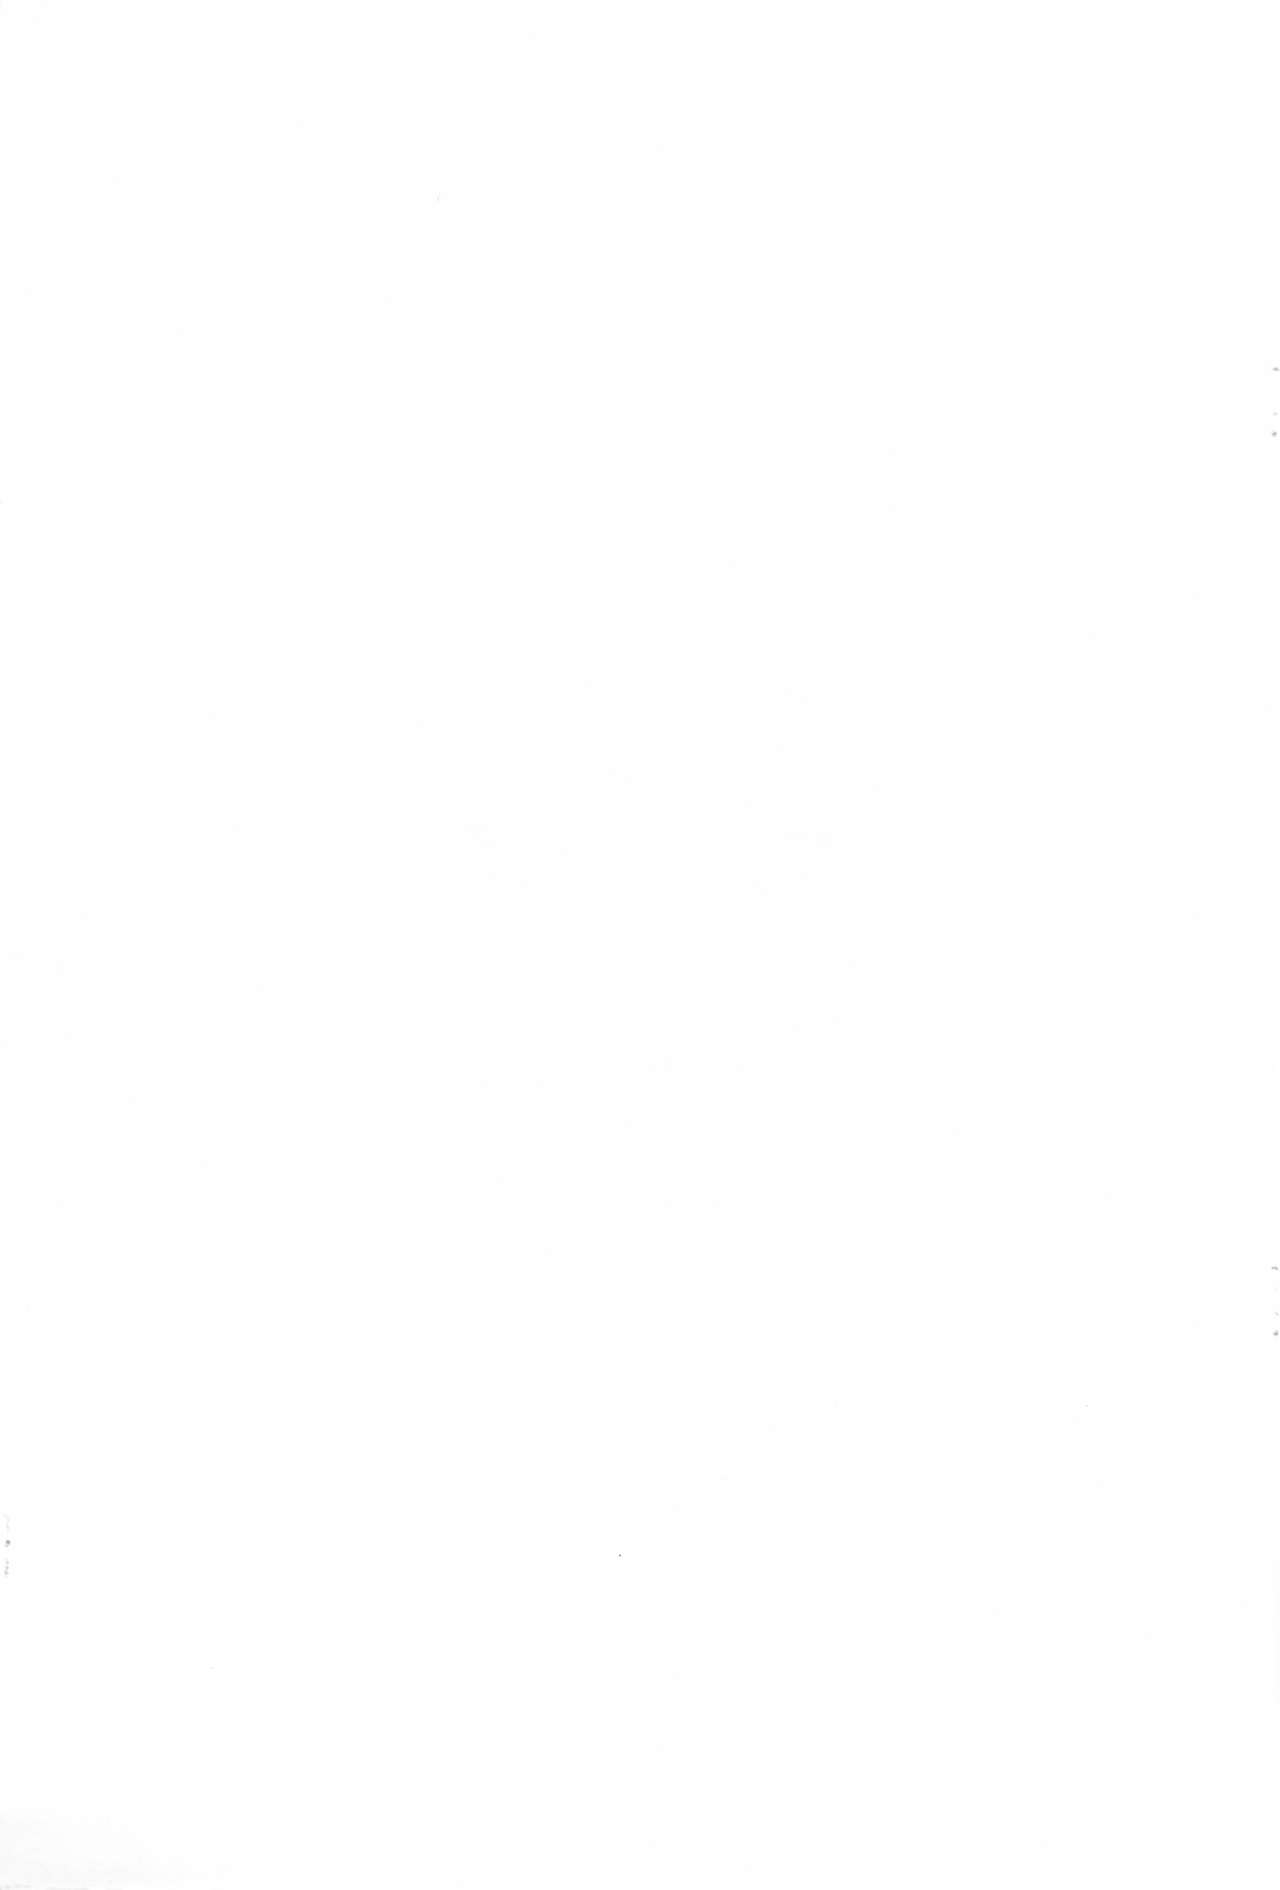 (ぷにケット19) [ニポポクライシス (原価壱円)] 河童先生とナイショの相撲特訓 (ゲゲゲの鬼太郎)